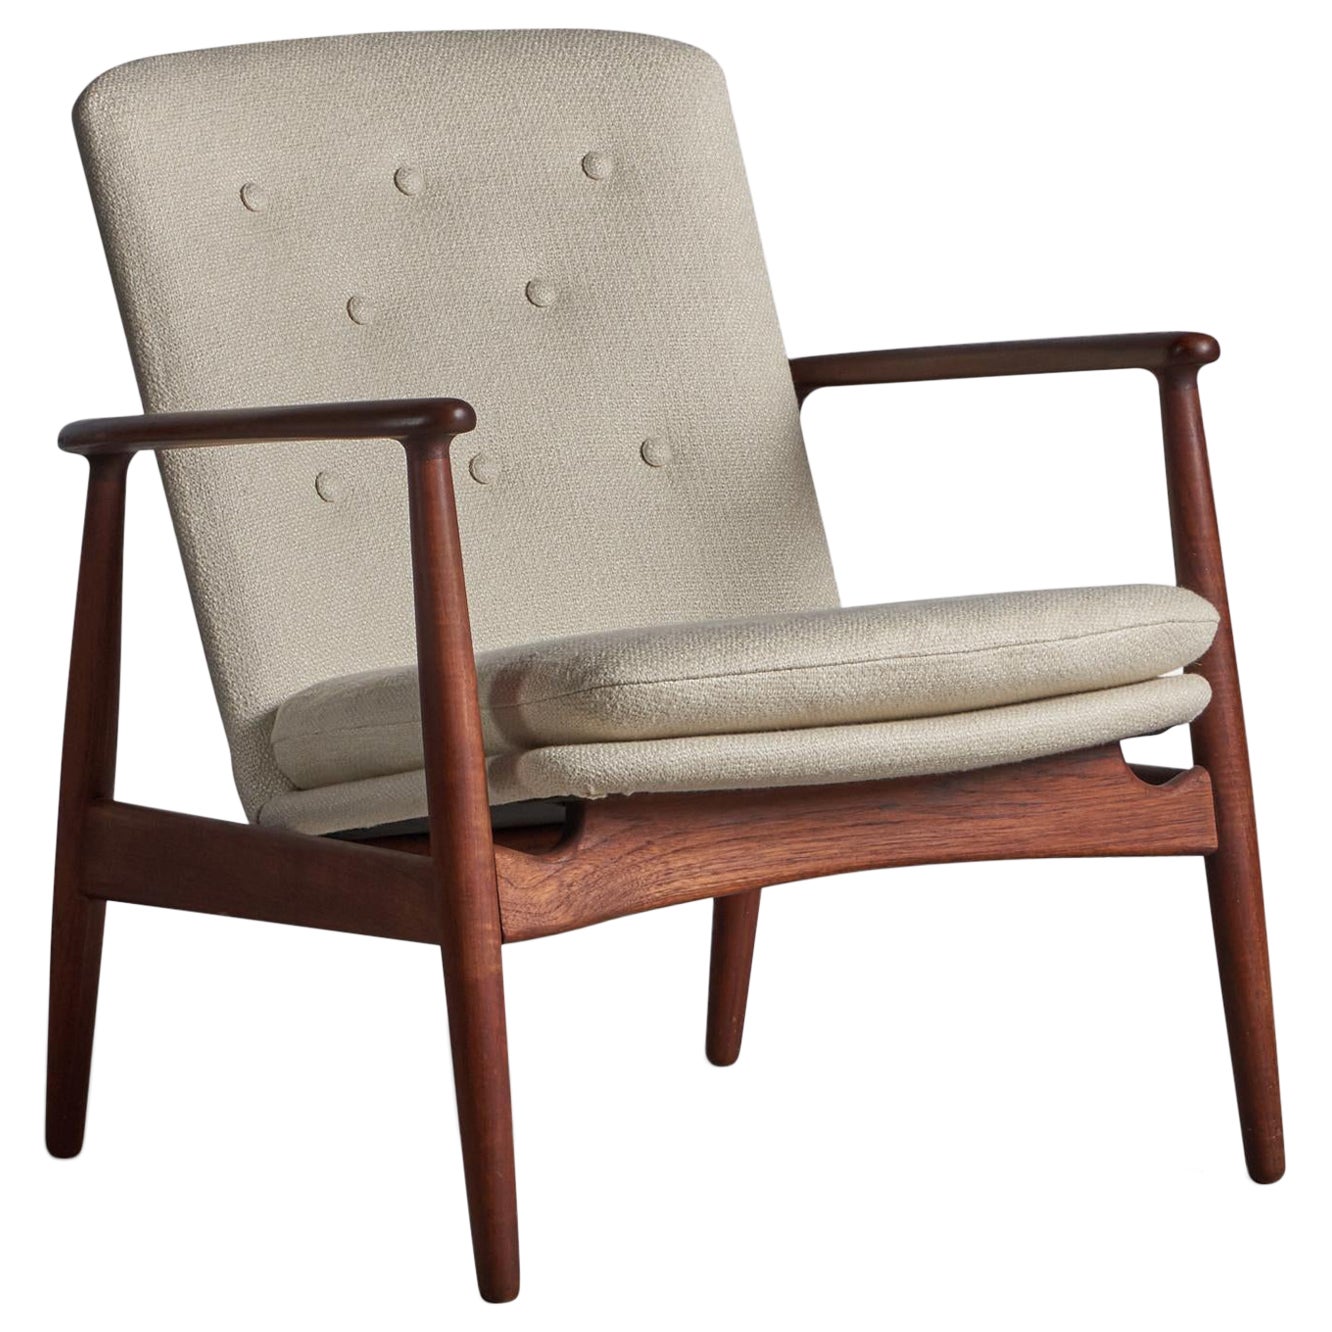 Arne Vodder, Lounge Chair, Teak, Fabric, Denmark, 1950s